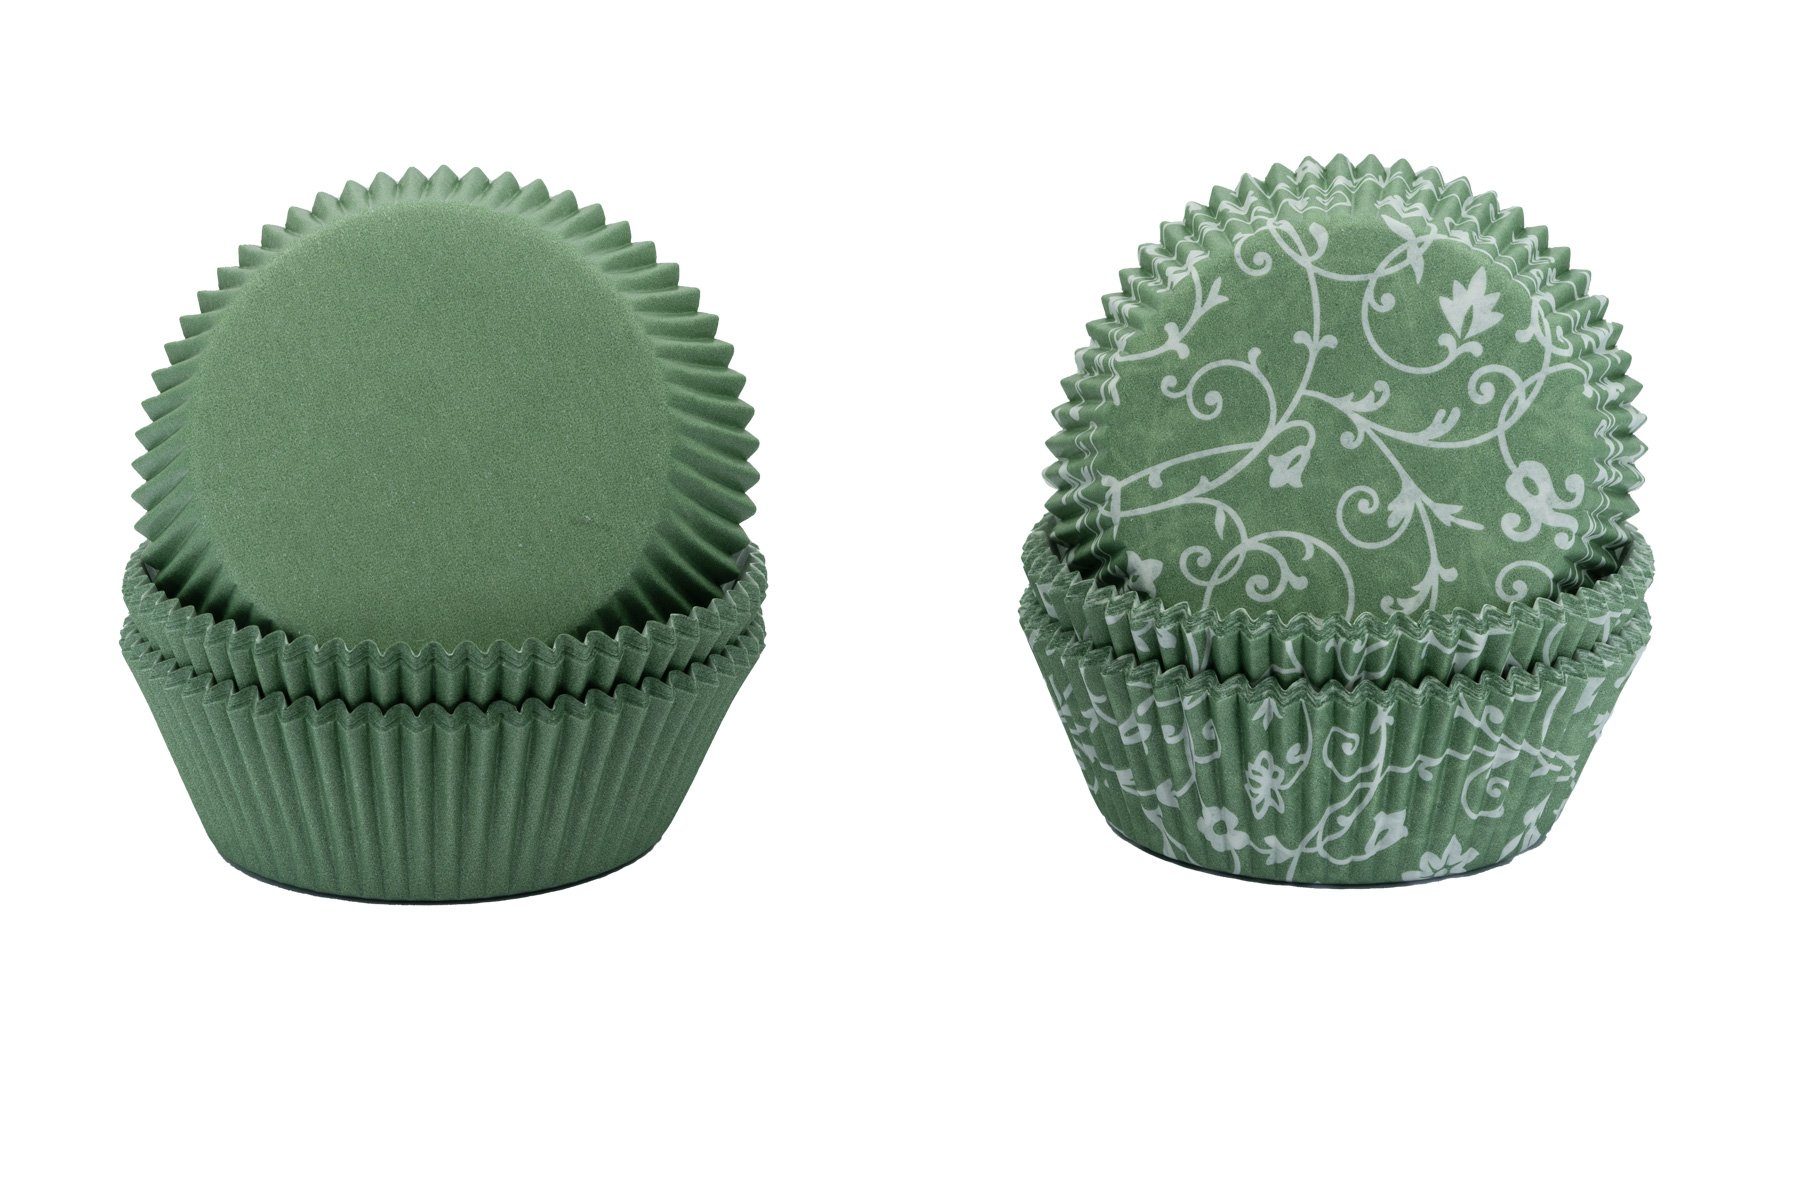 Demmler Muffinform Jade (Grün) mit & ohne Muster, Papier Muffinförmchen Set - Made in Germany